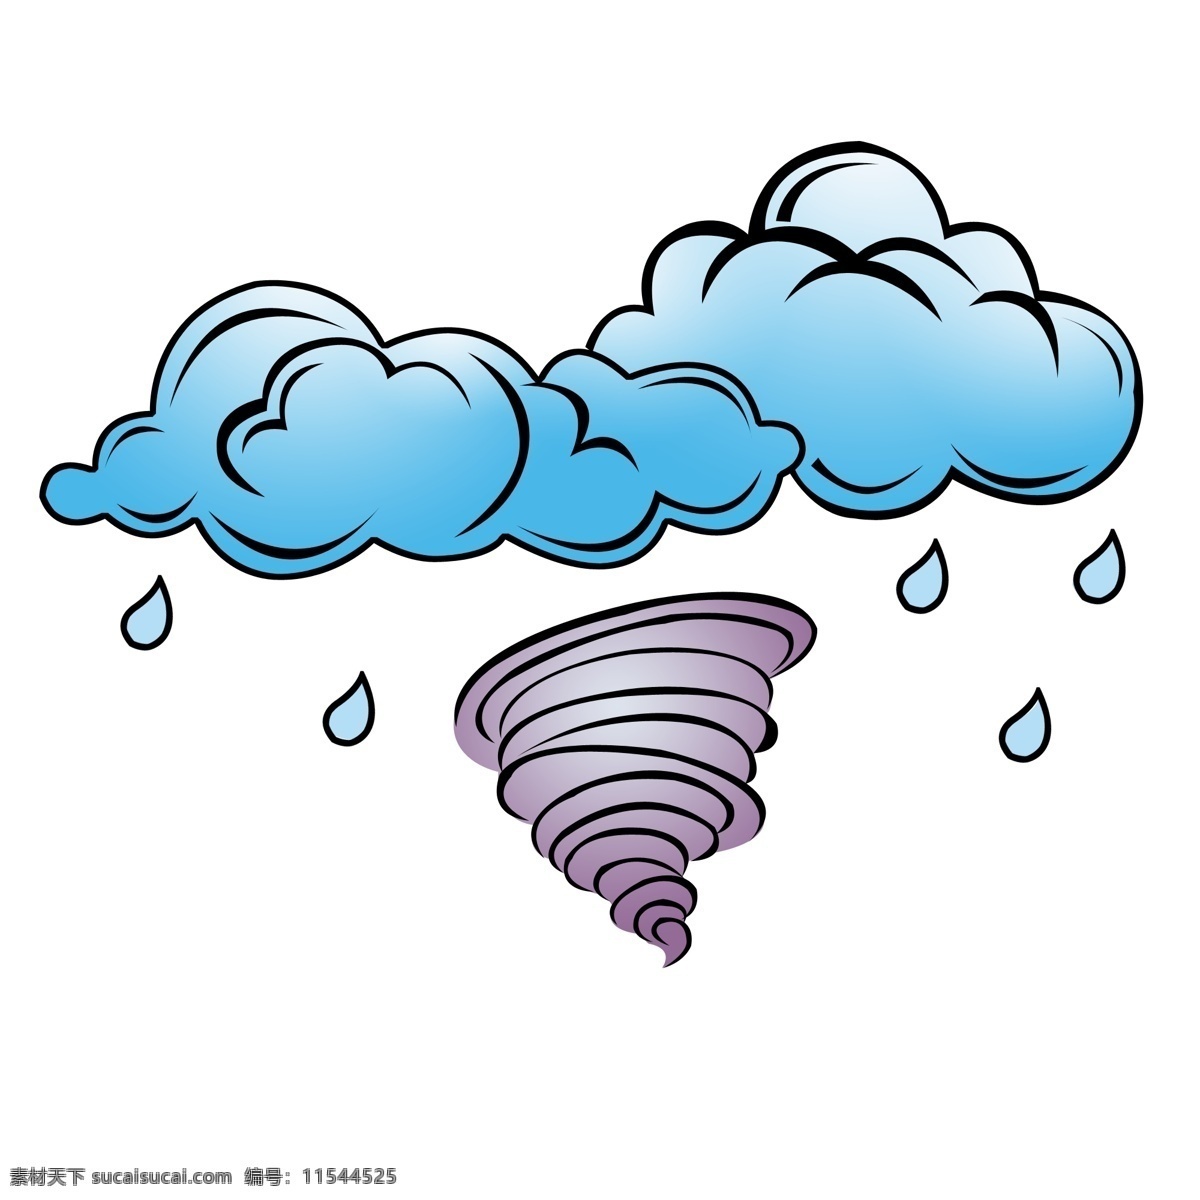 龙卷风 天气 装饰 插画 龙卷风天气 刮风天气 大风 蓝色云朵 雨滴 下雨天气 天气预报 天气现象 卡通插画